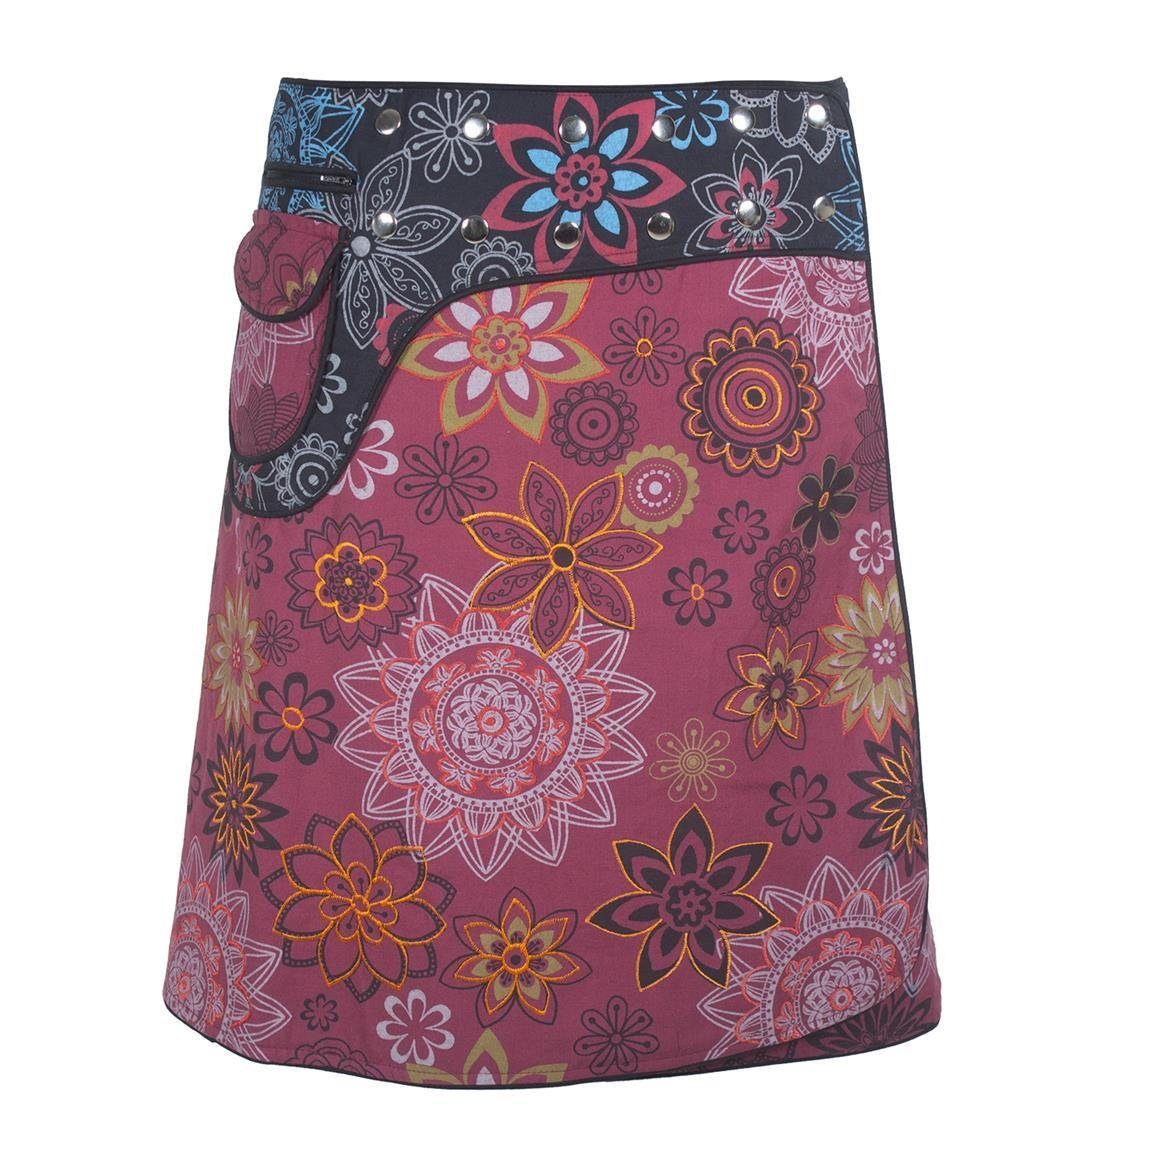 Vishes Wickelrock Wrapper Bunt Bedruckt Bestickt mit Blumen Sidebag A-Linie, Cacheur, Goa, Hippie Style dunkelrot-schwarz